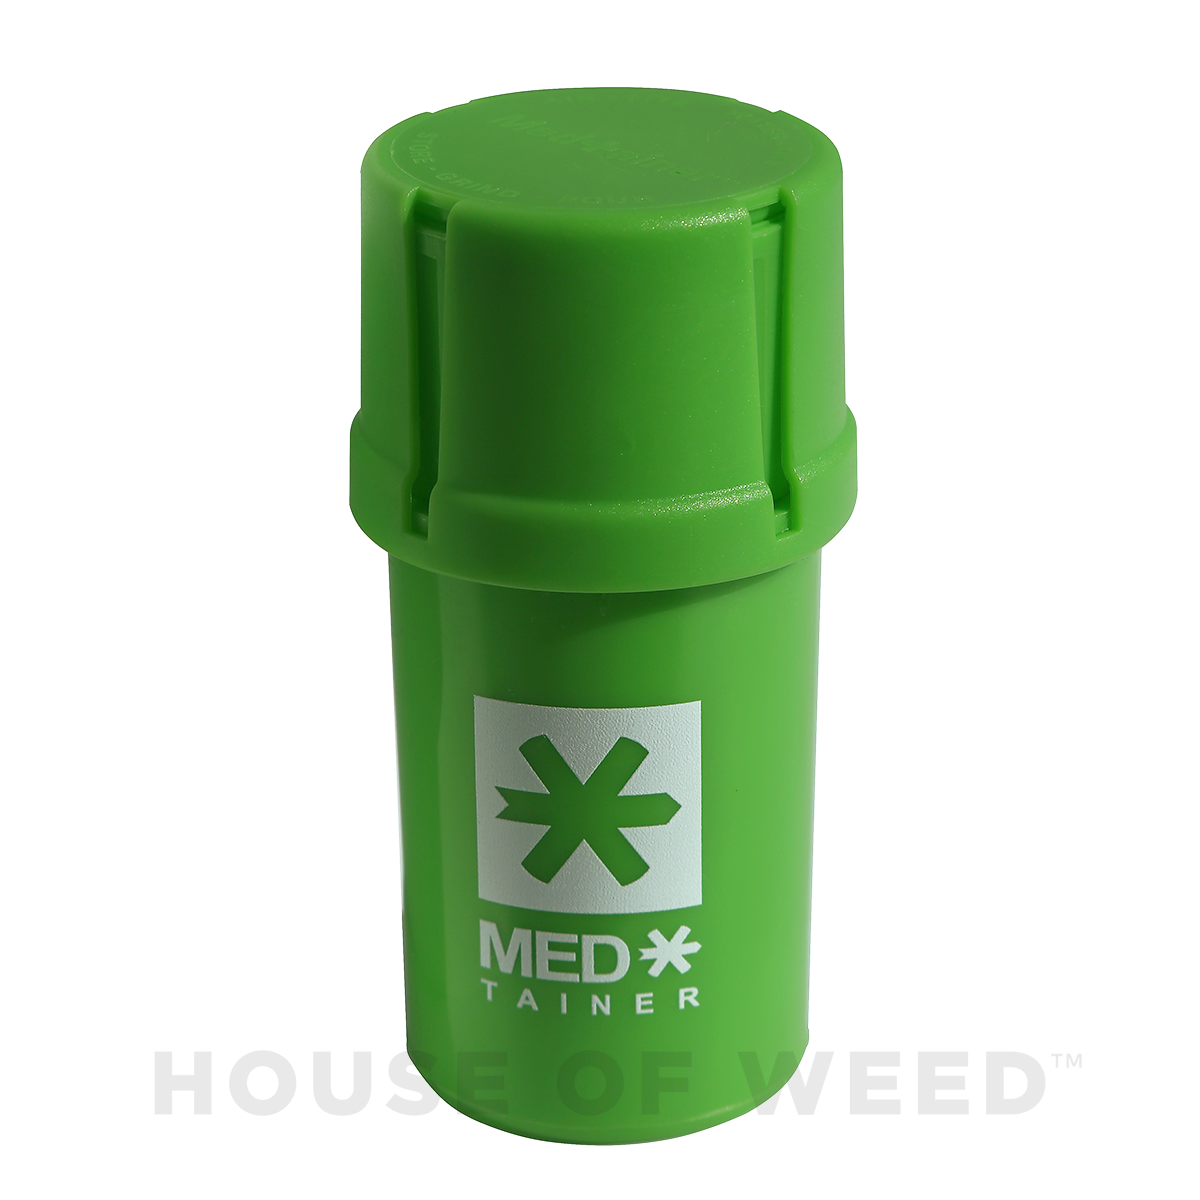 Moledor y contenedor de la marca Medtainer color verde con logo Medtainer Blanco